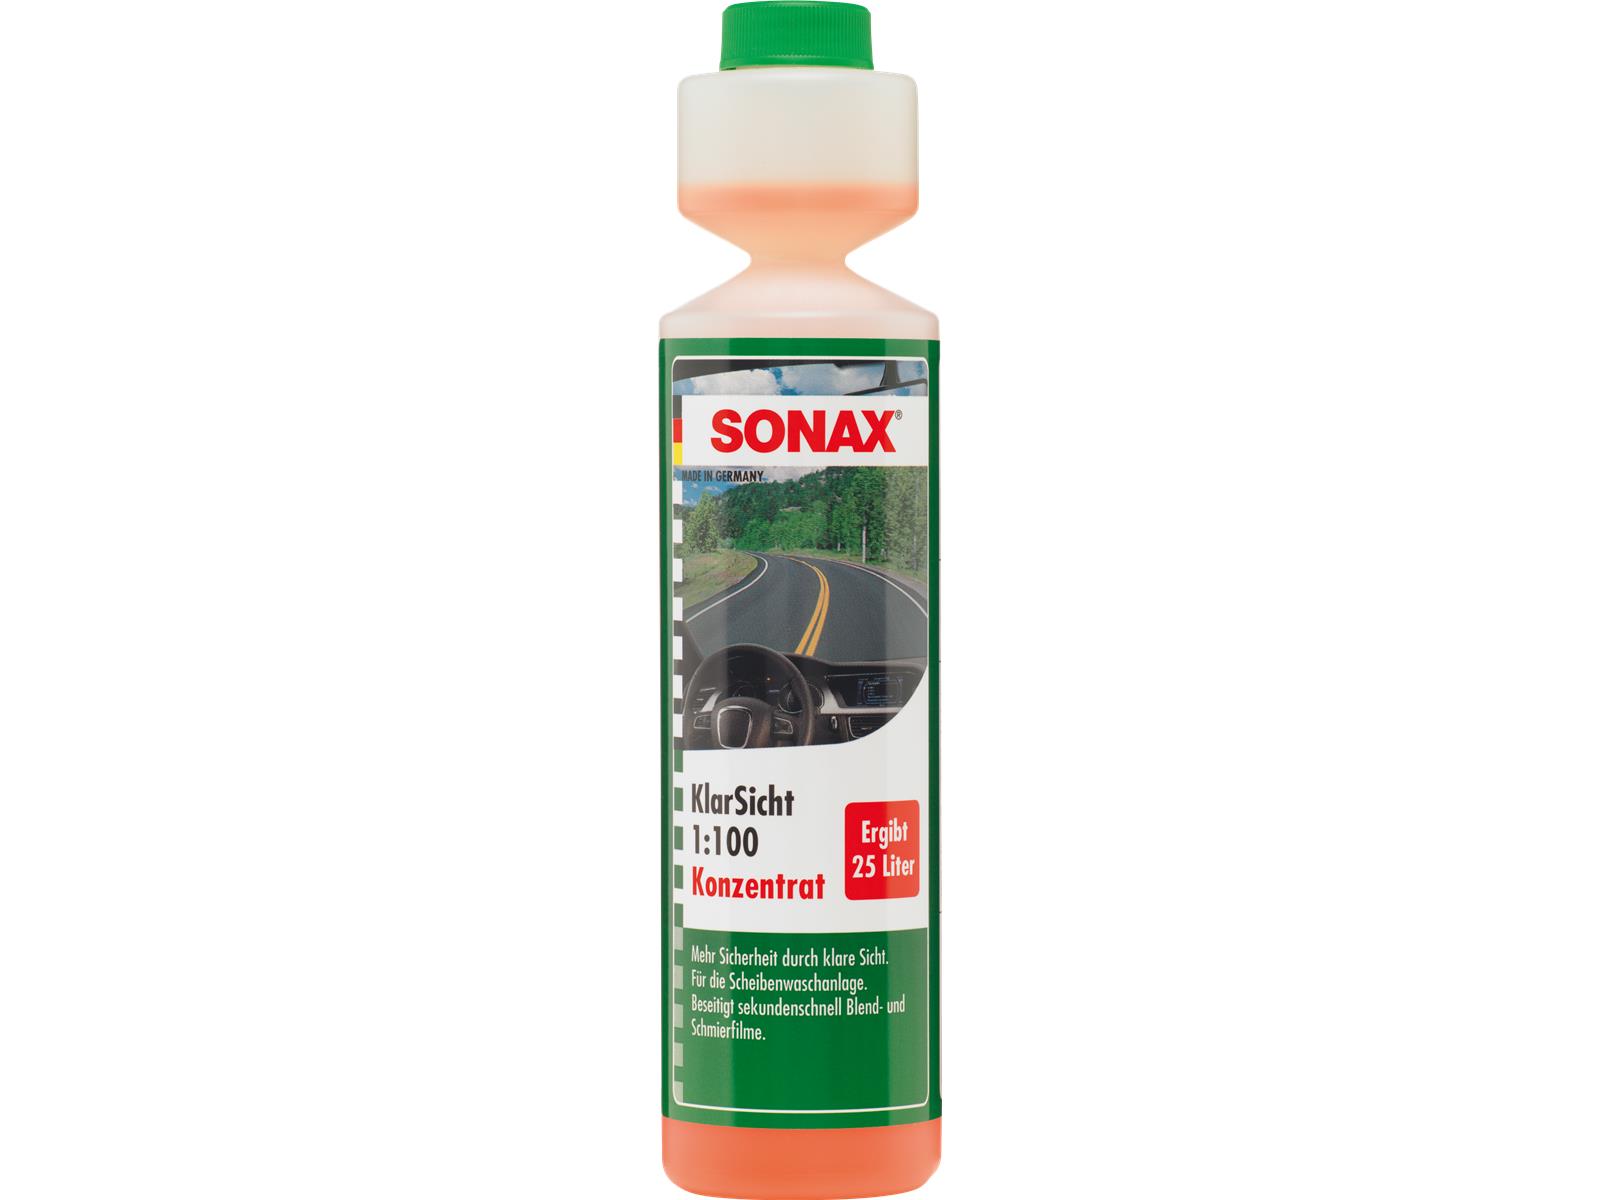 SONAX 03711410 KlarSicht 1:100 Konzentrat 250 ml